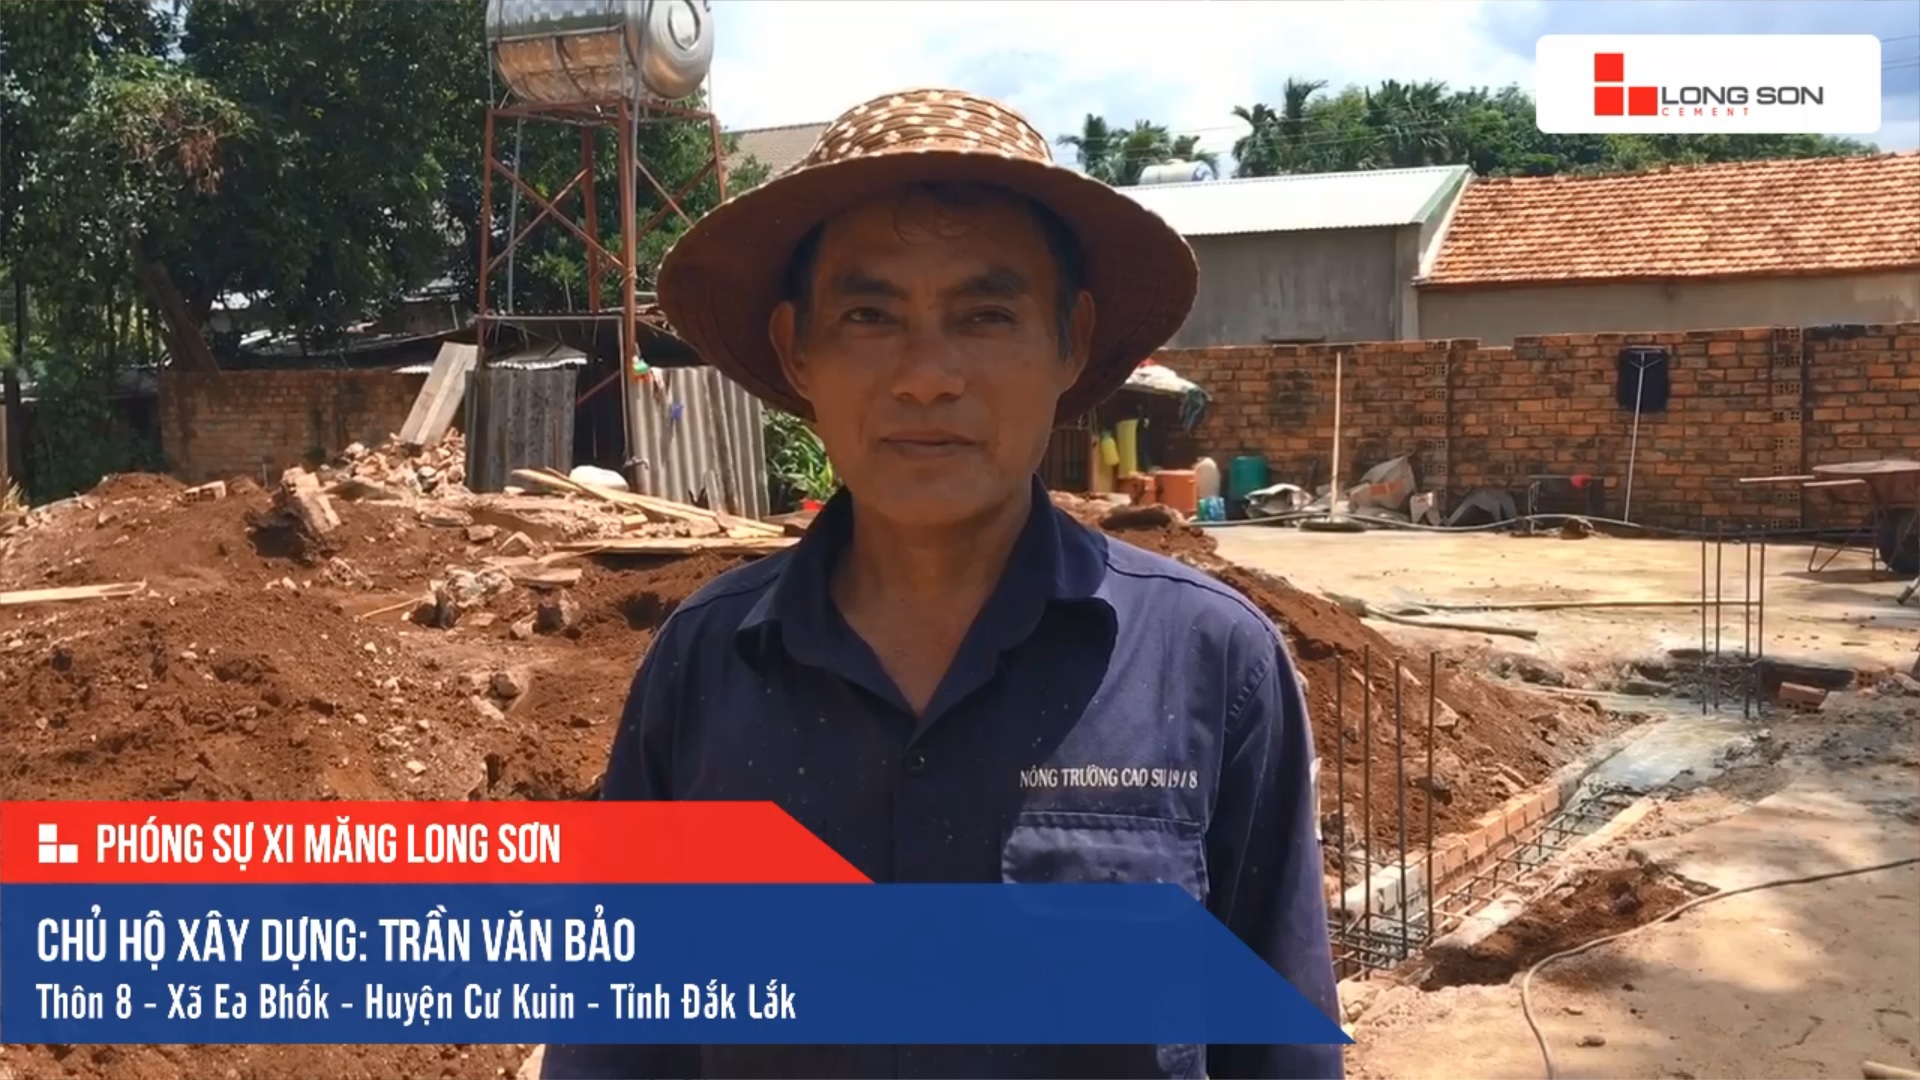 Phóng sự công trình sử dụng Xi măng Long Sơn tại Đắk Lắk 26.06.2019